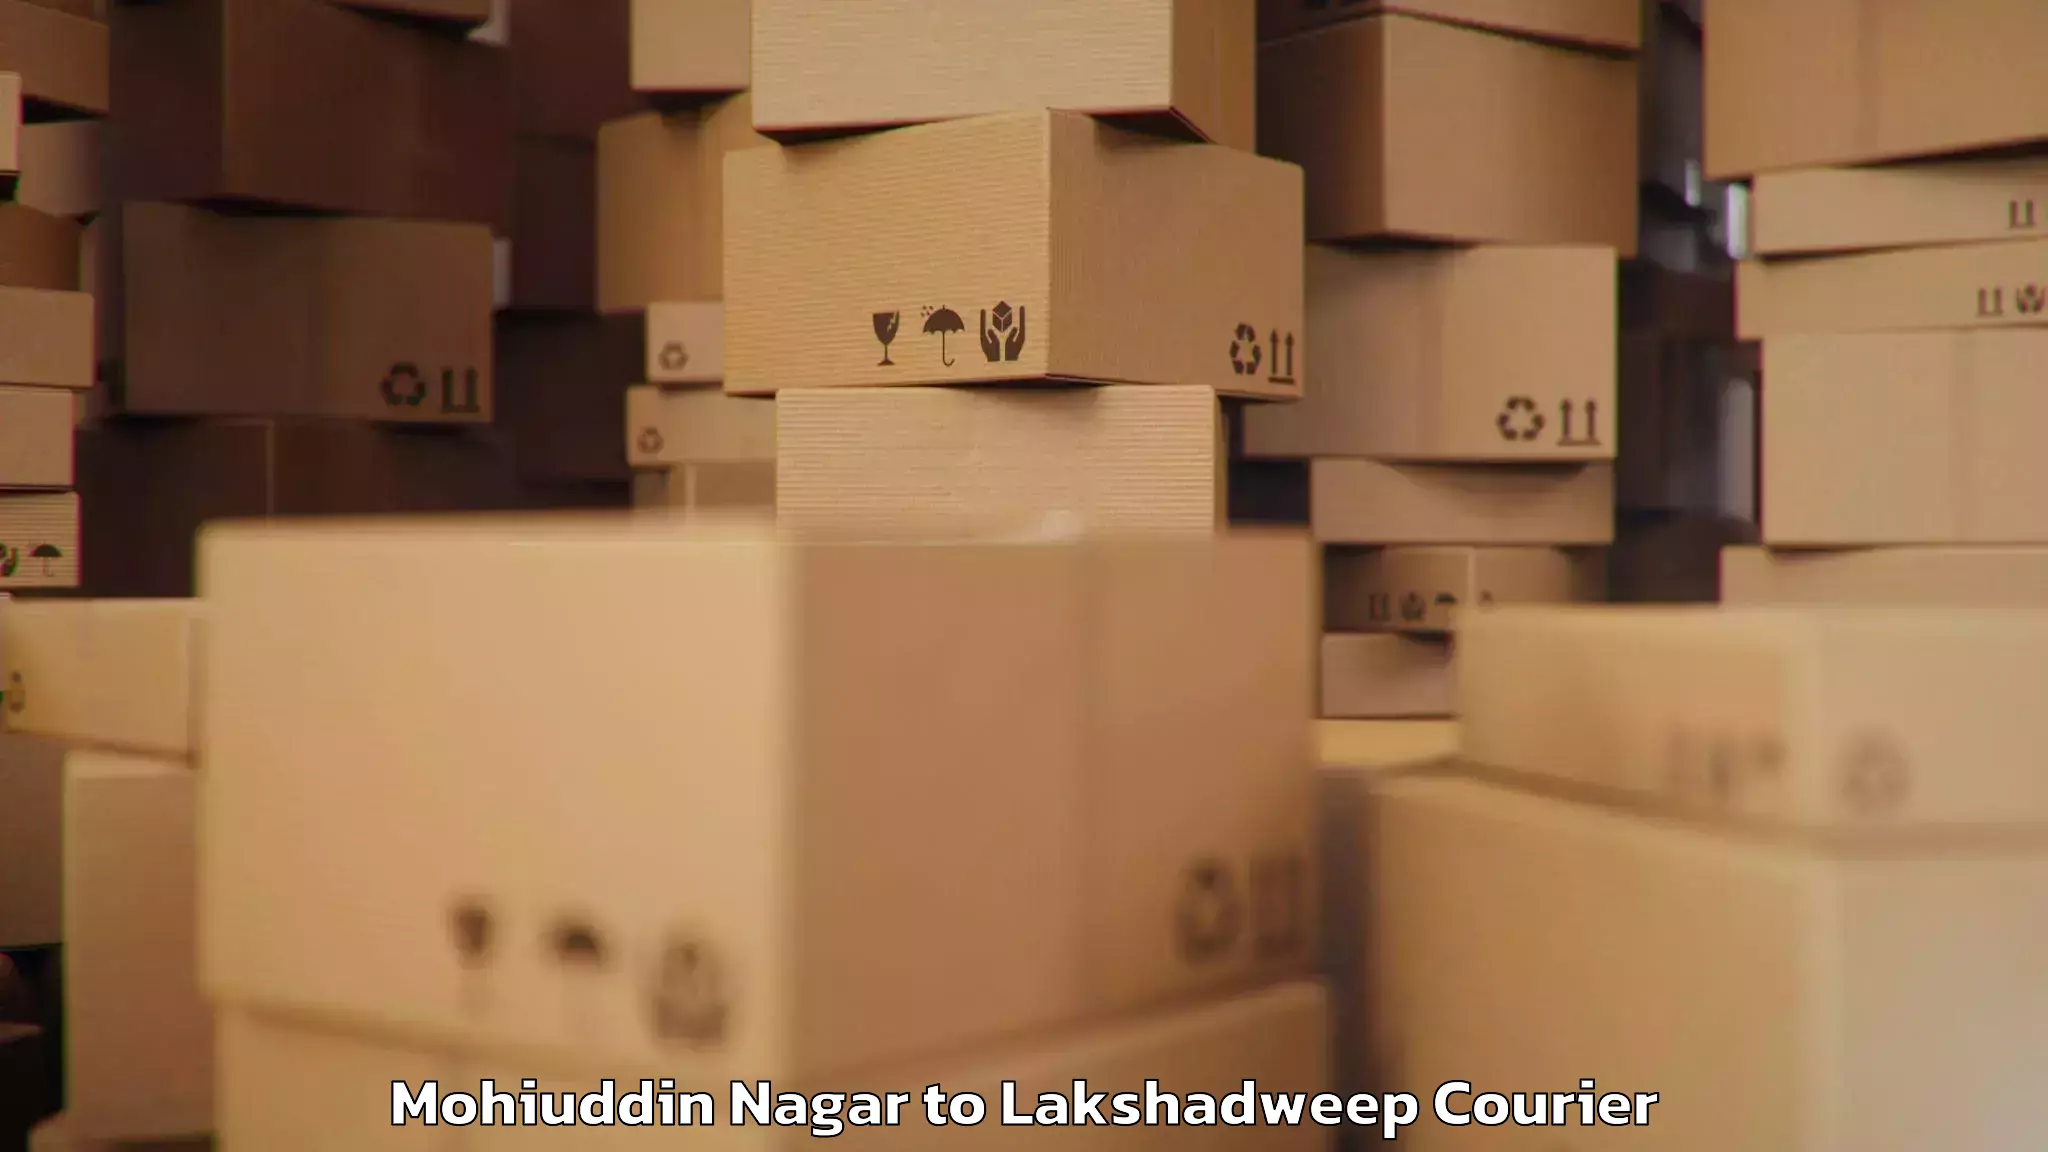 Baggage shipping experience Mohiuddin Nagar to Lakshadweep